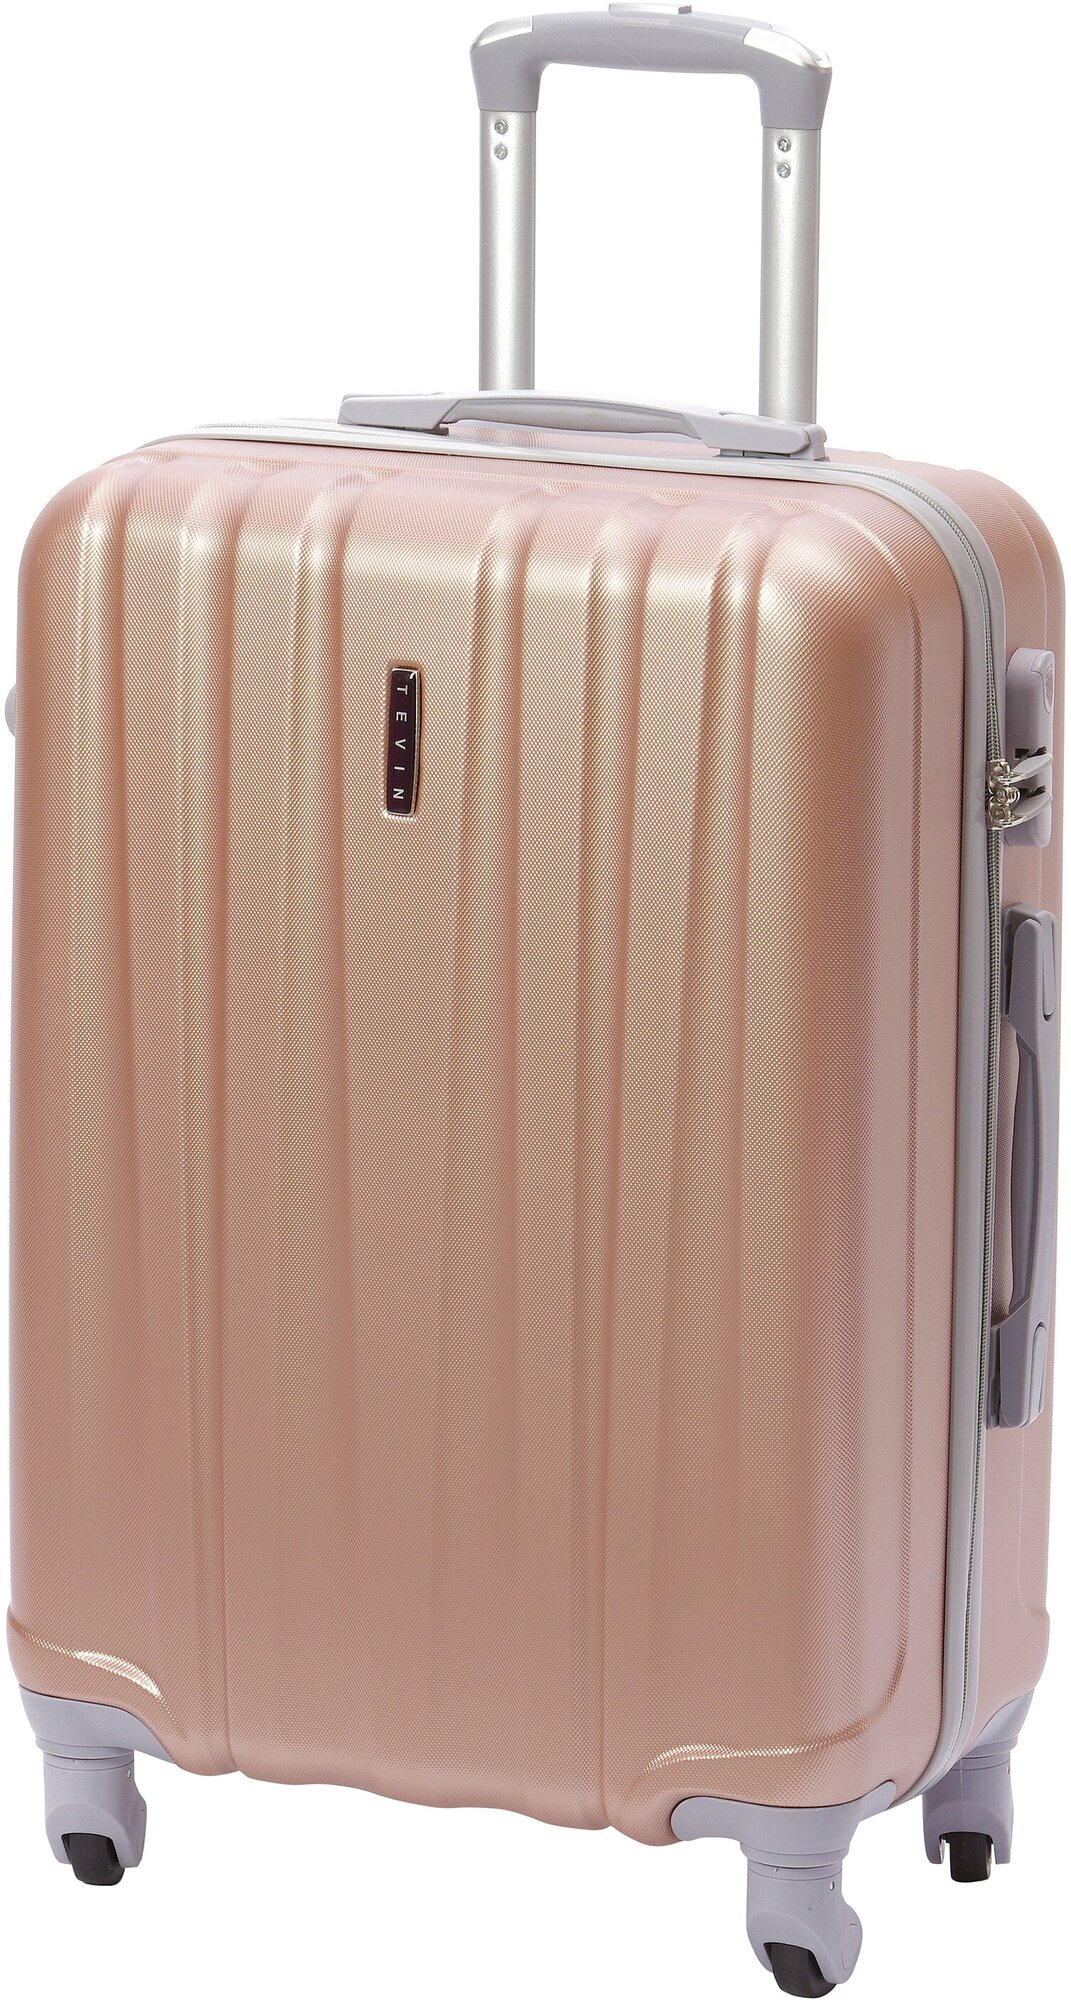 Чемодан на колесах дорожный средний багаж для путешествий для девочки s+ TEVIN размер С+ 60 см 52 л легкий и прочный abs (абс) пластик Розовый